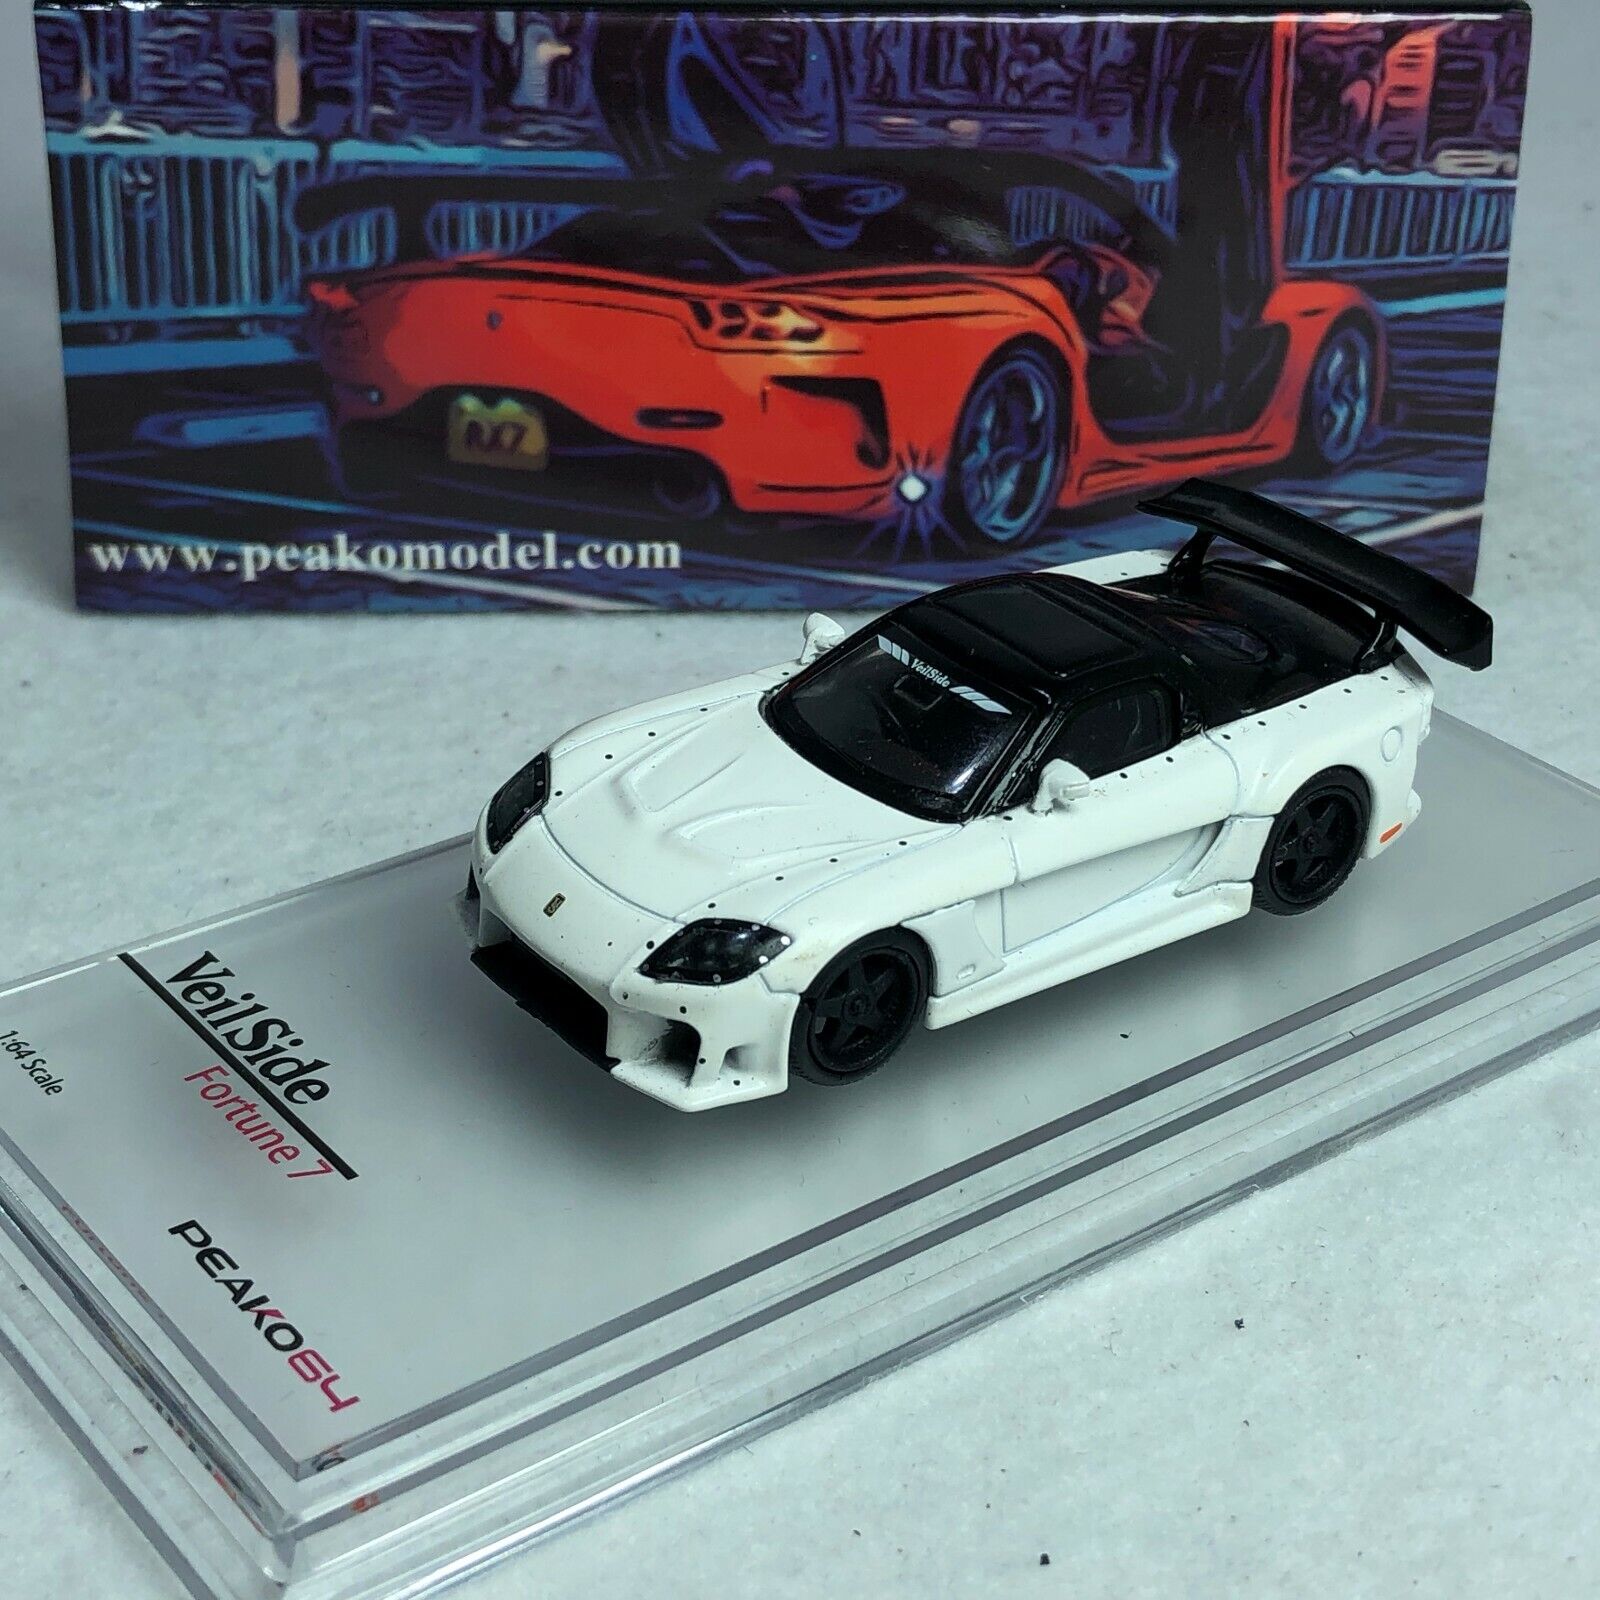 1/64 Peako64 Peako Mazda RX7 Veilside Fortune 7 White Special edition